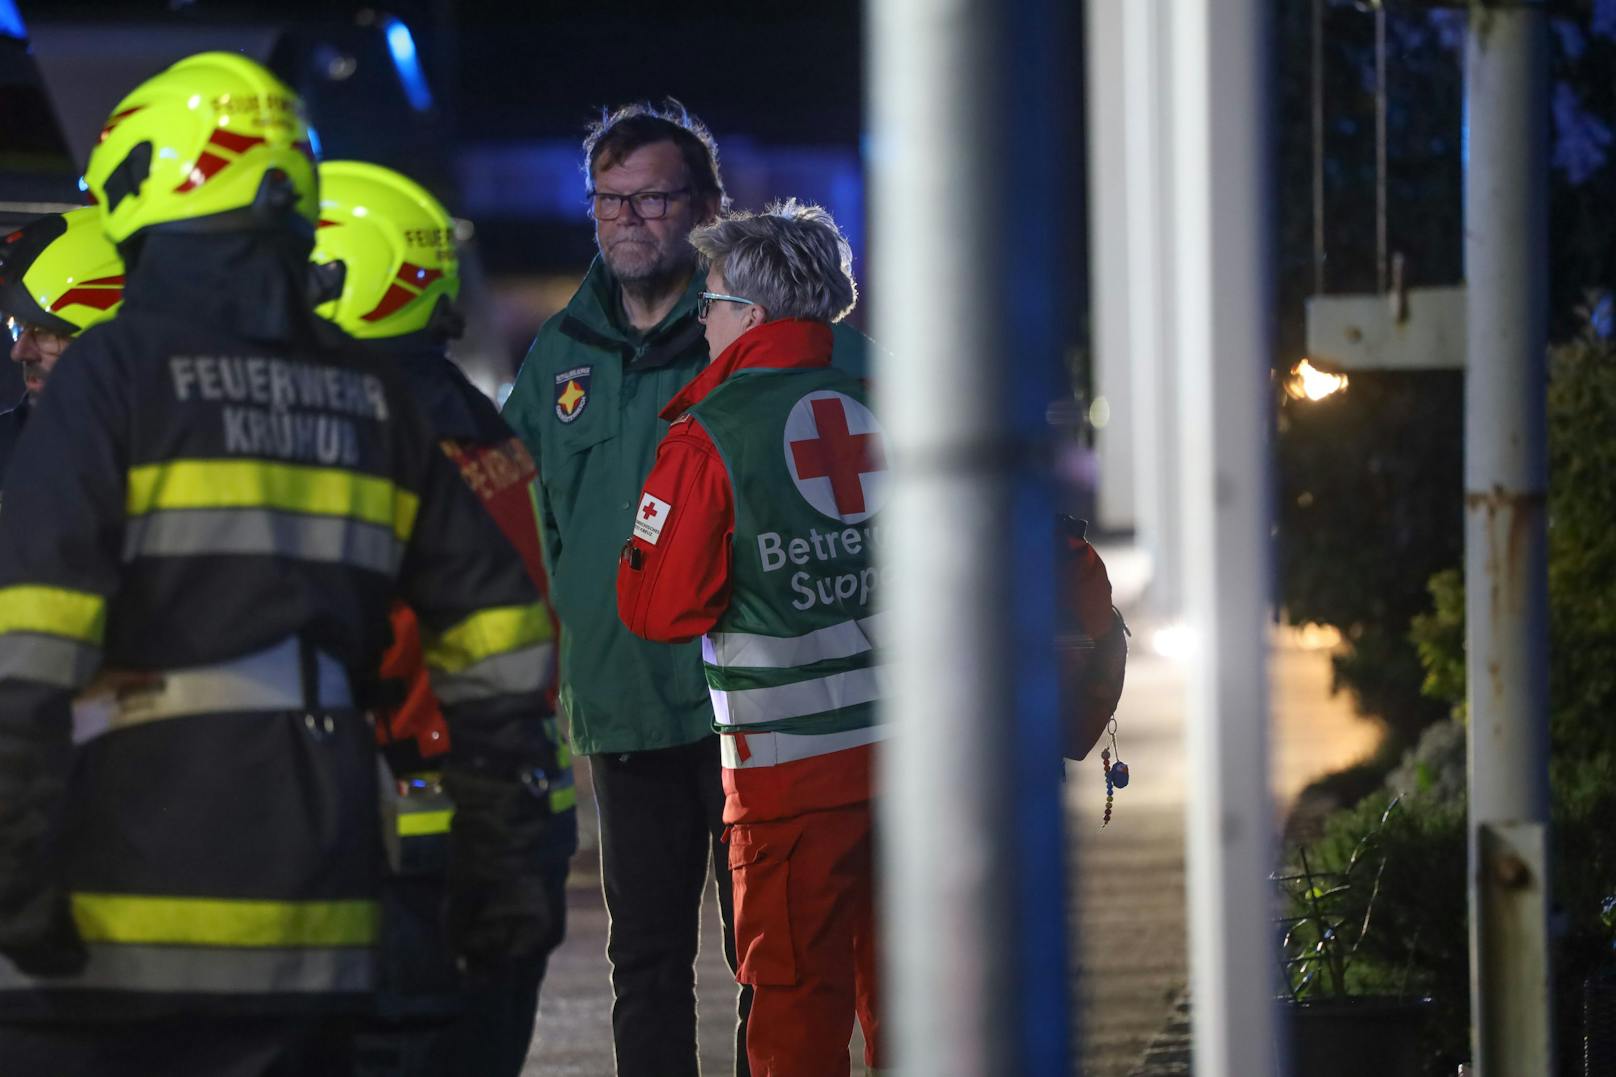 Ein Todesopfer sowie 14 Verletzte hat in der Nacht auf Freitag ein Brand in einer Mehrparteienhauswohnung in Kremsmünster (Bezirk Kirchdorf an der Krems) gefordert.